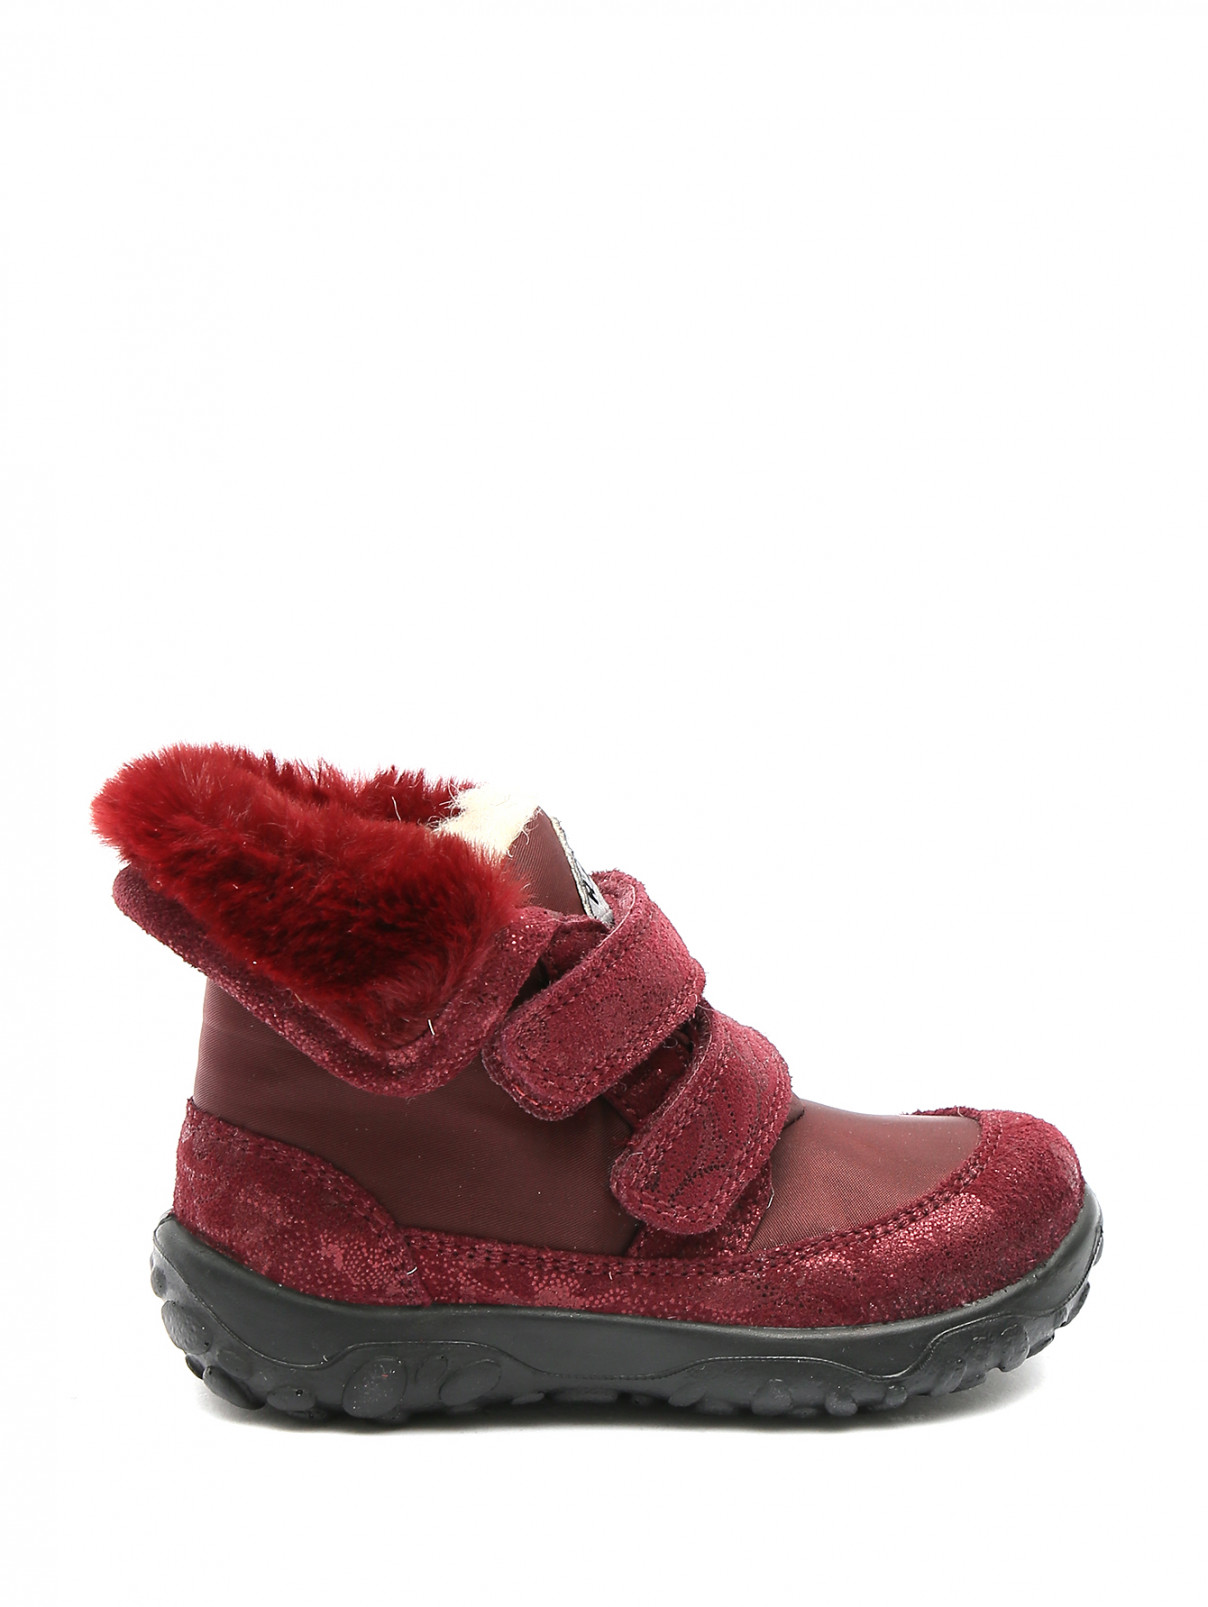 Ботинки из текстиля и замши на цепочке Naturino  –  Обтравка1  – Цвет:  Красный